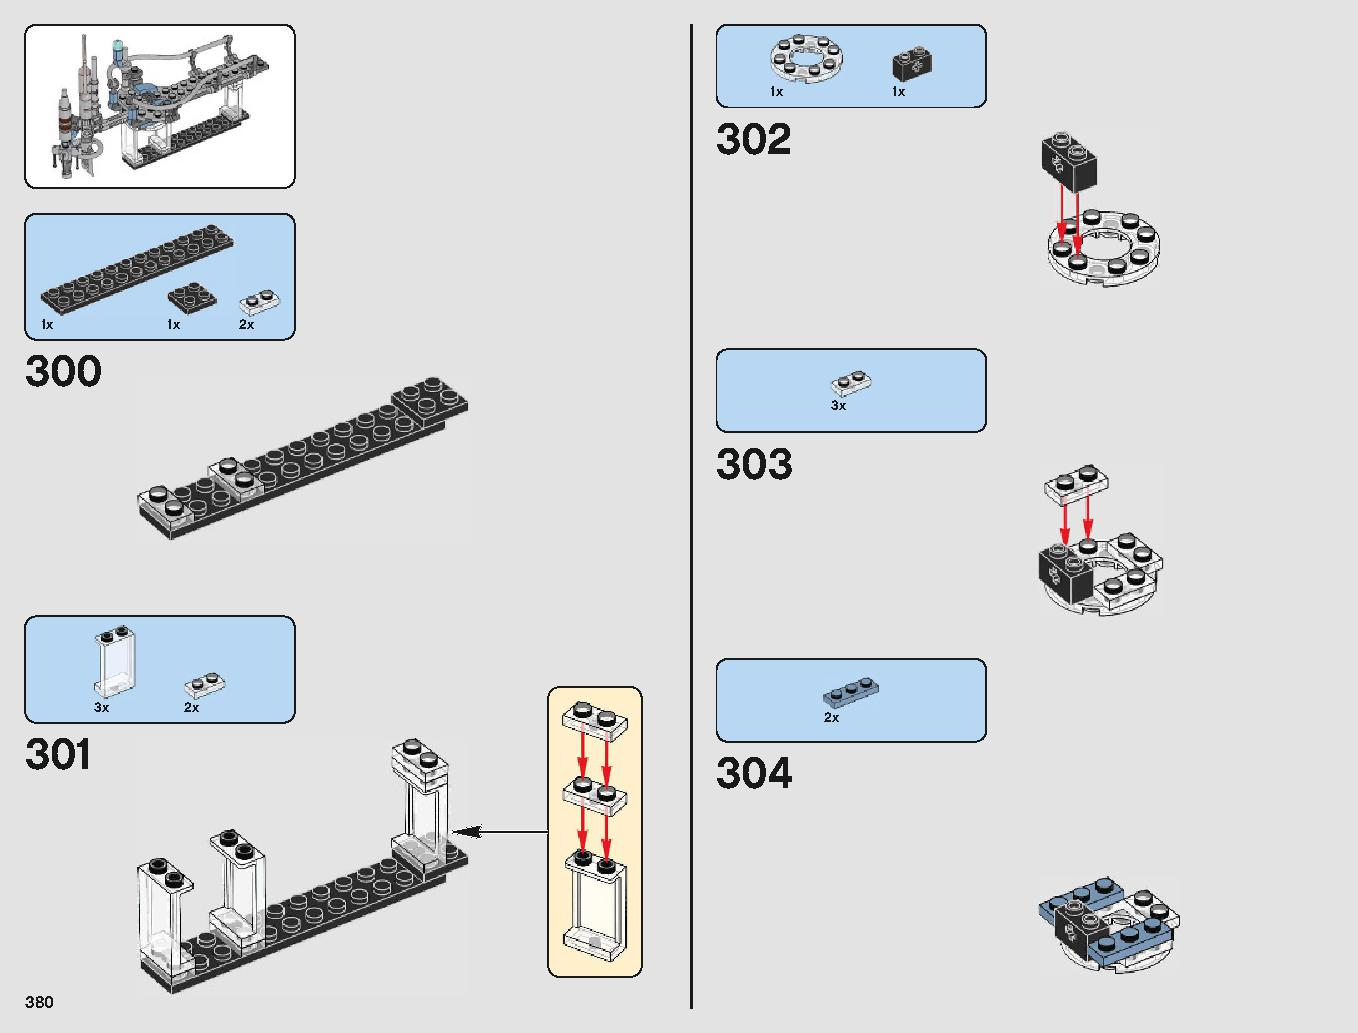 クラウド・シティ 75222 レゴの商品情報 レゴの説明書・組立方法 380 page